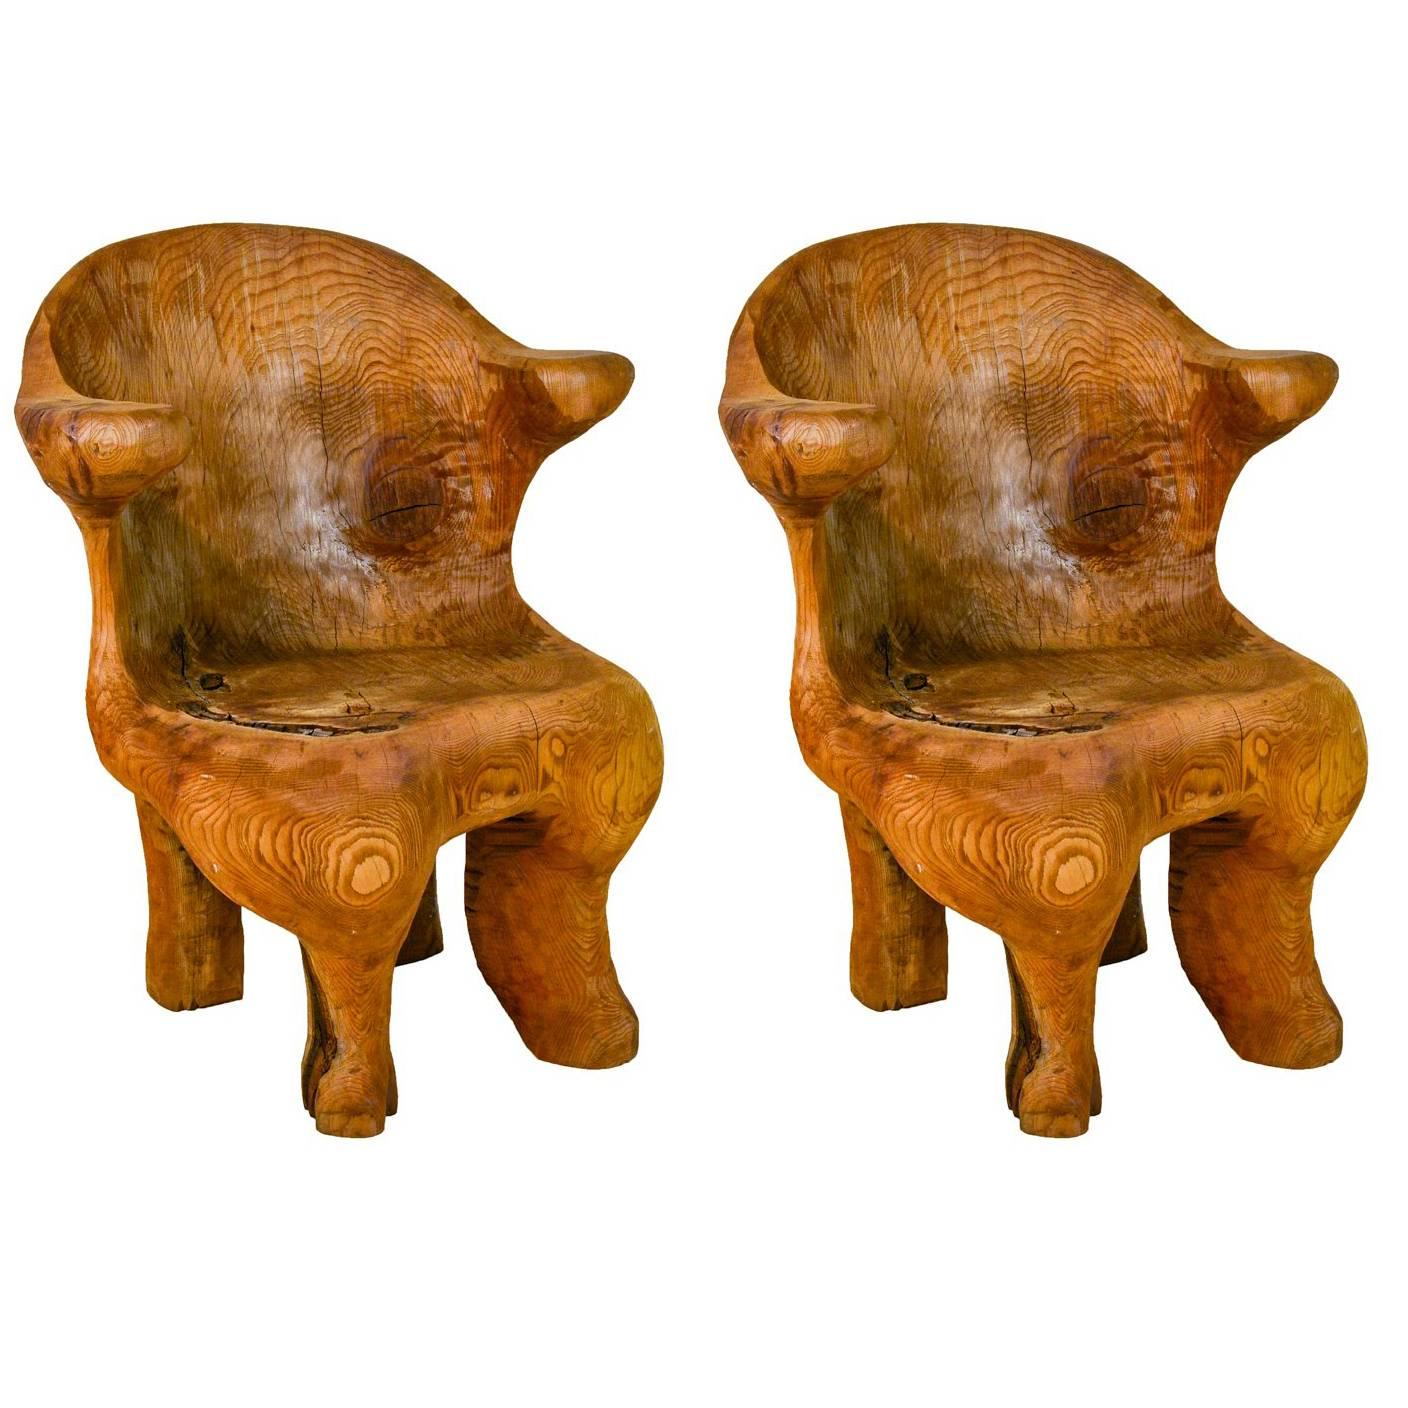 Pair of Vintage Log Chairs